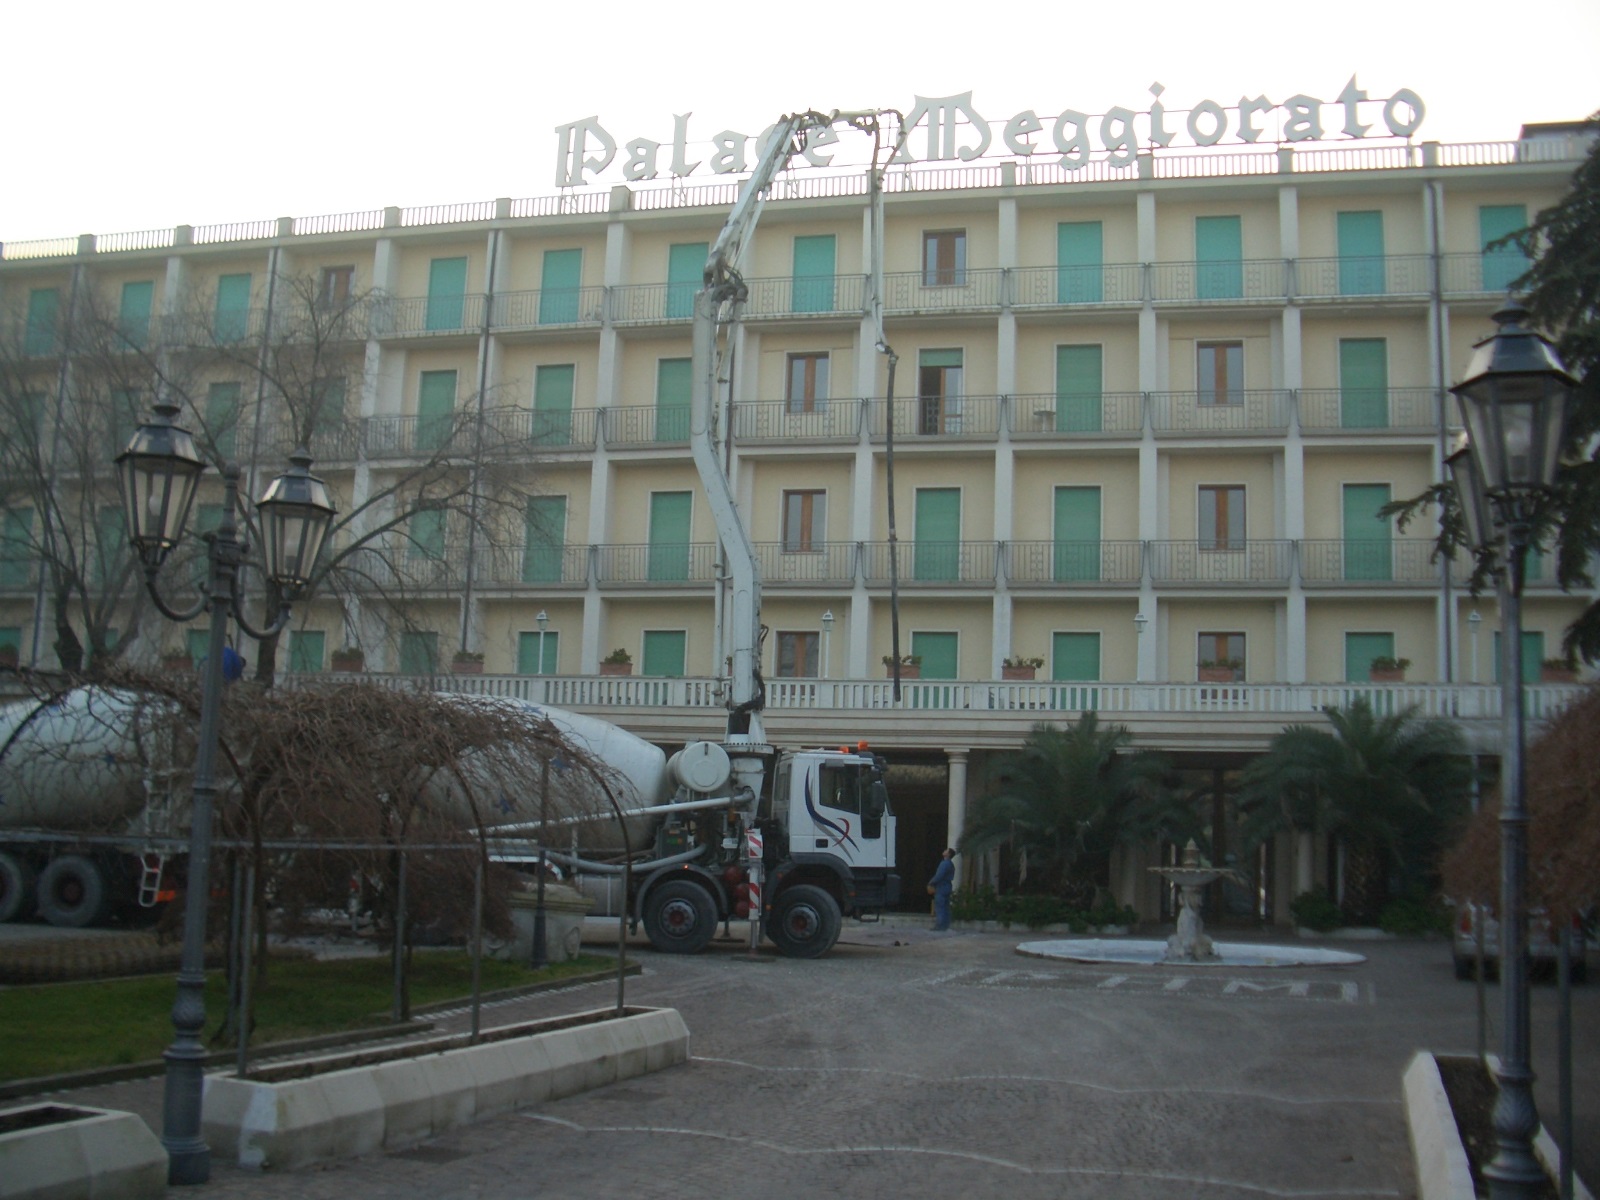 Hotel Palace Meggiorato